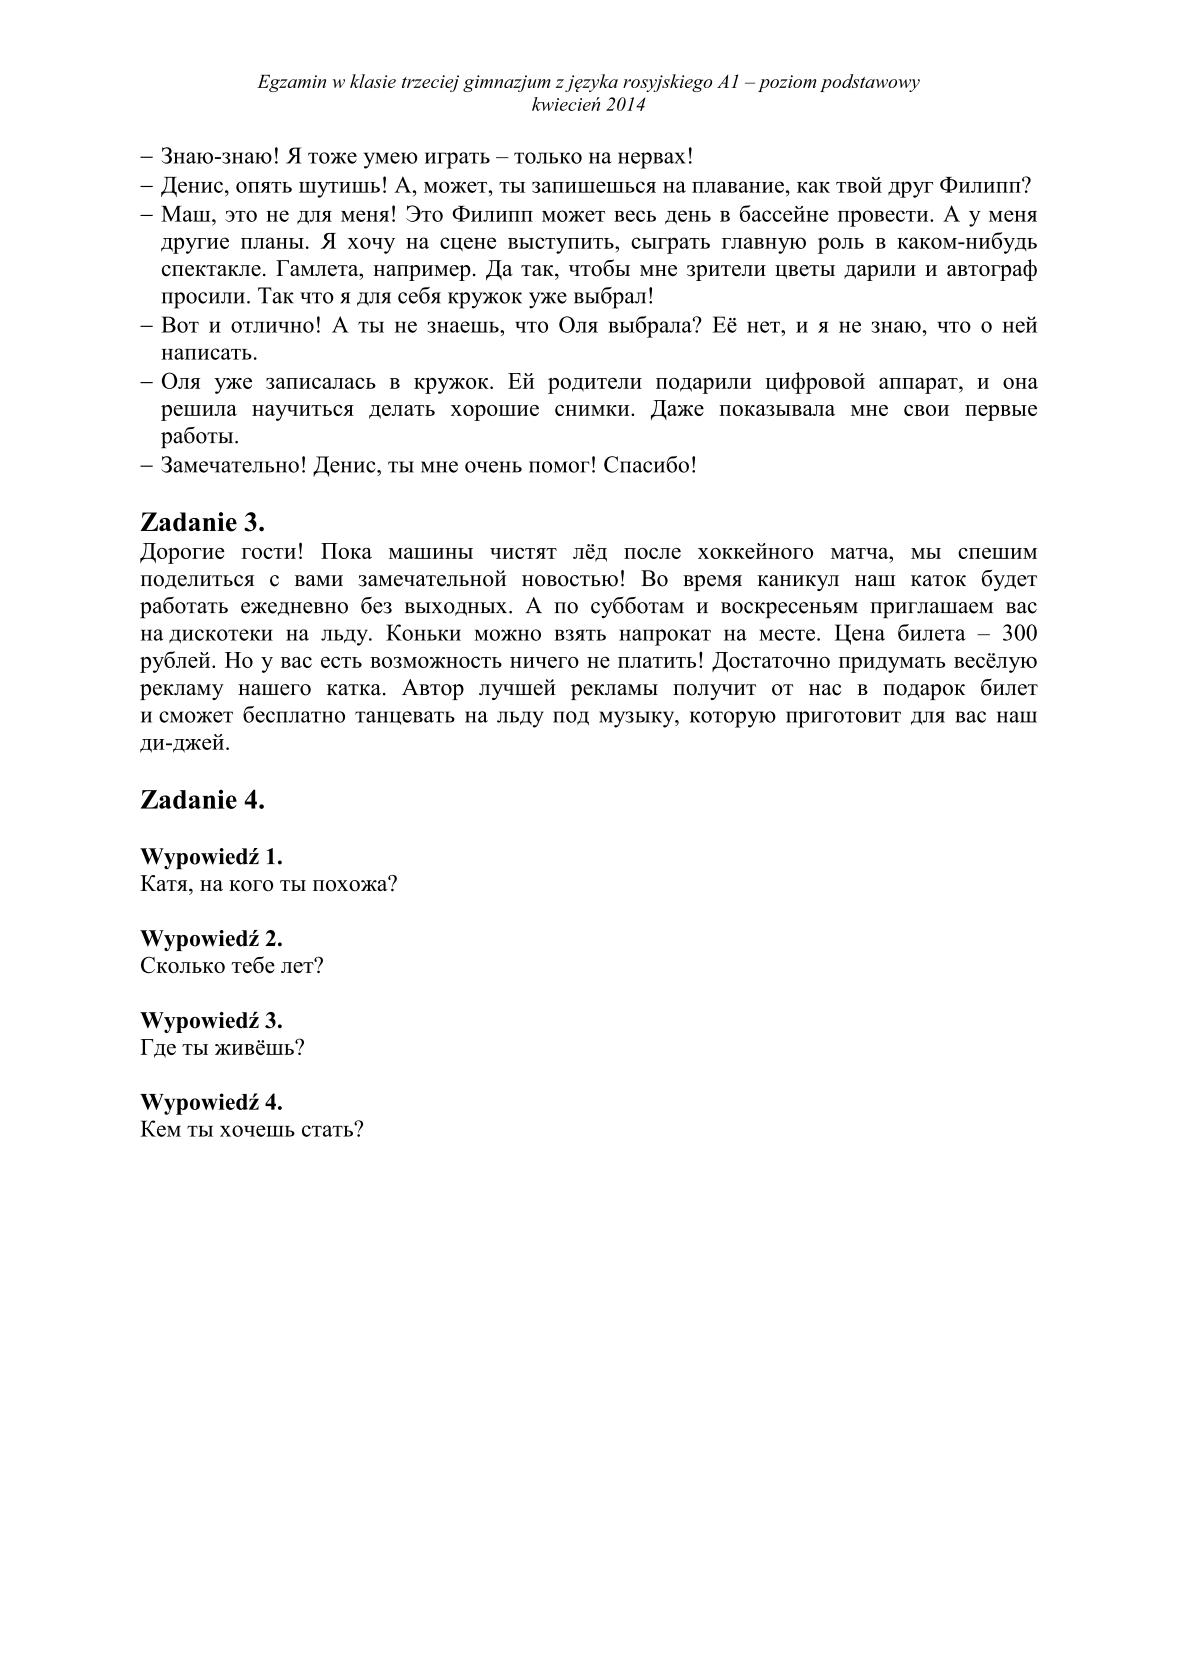 transkrypcja-rosyjski-poziom-podstawowy-egzamin-gimnazjalny-25.04.2014-14